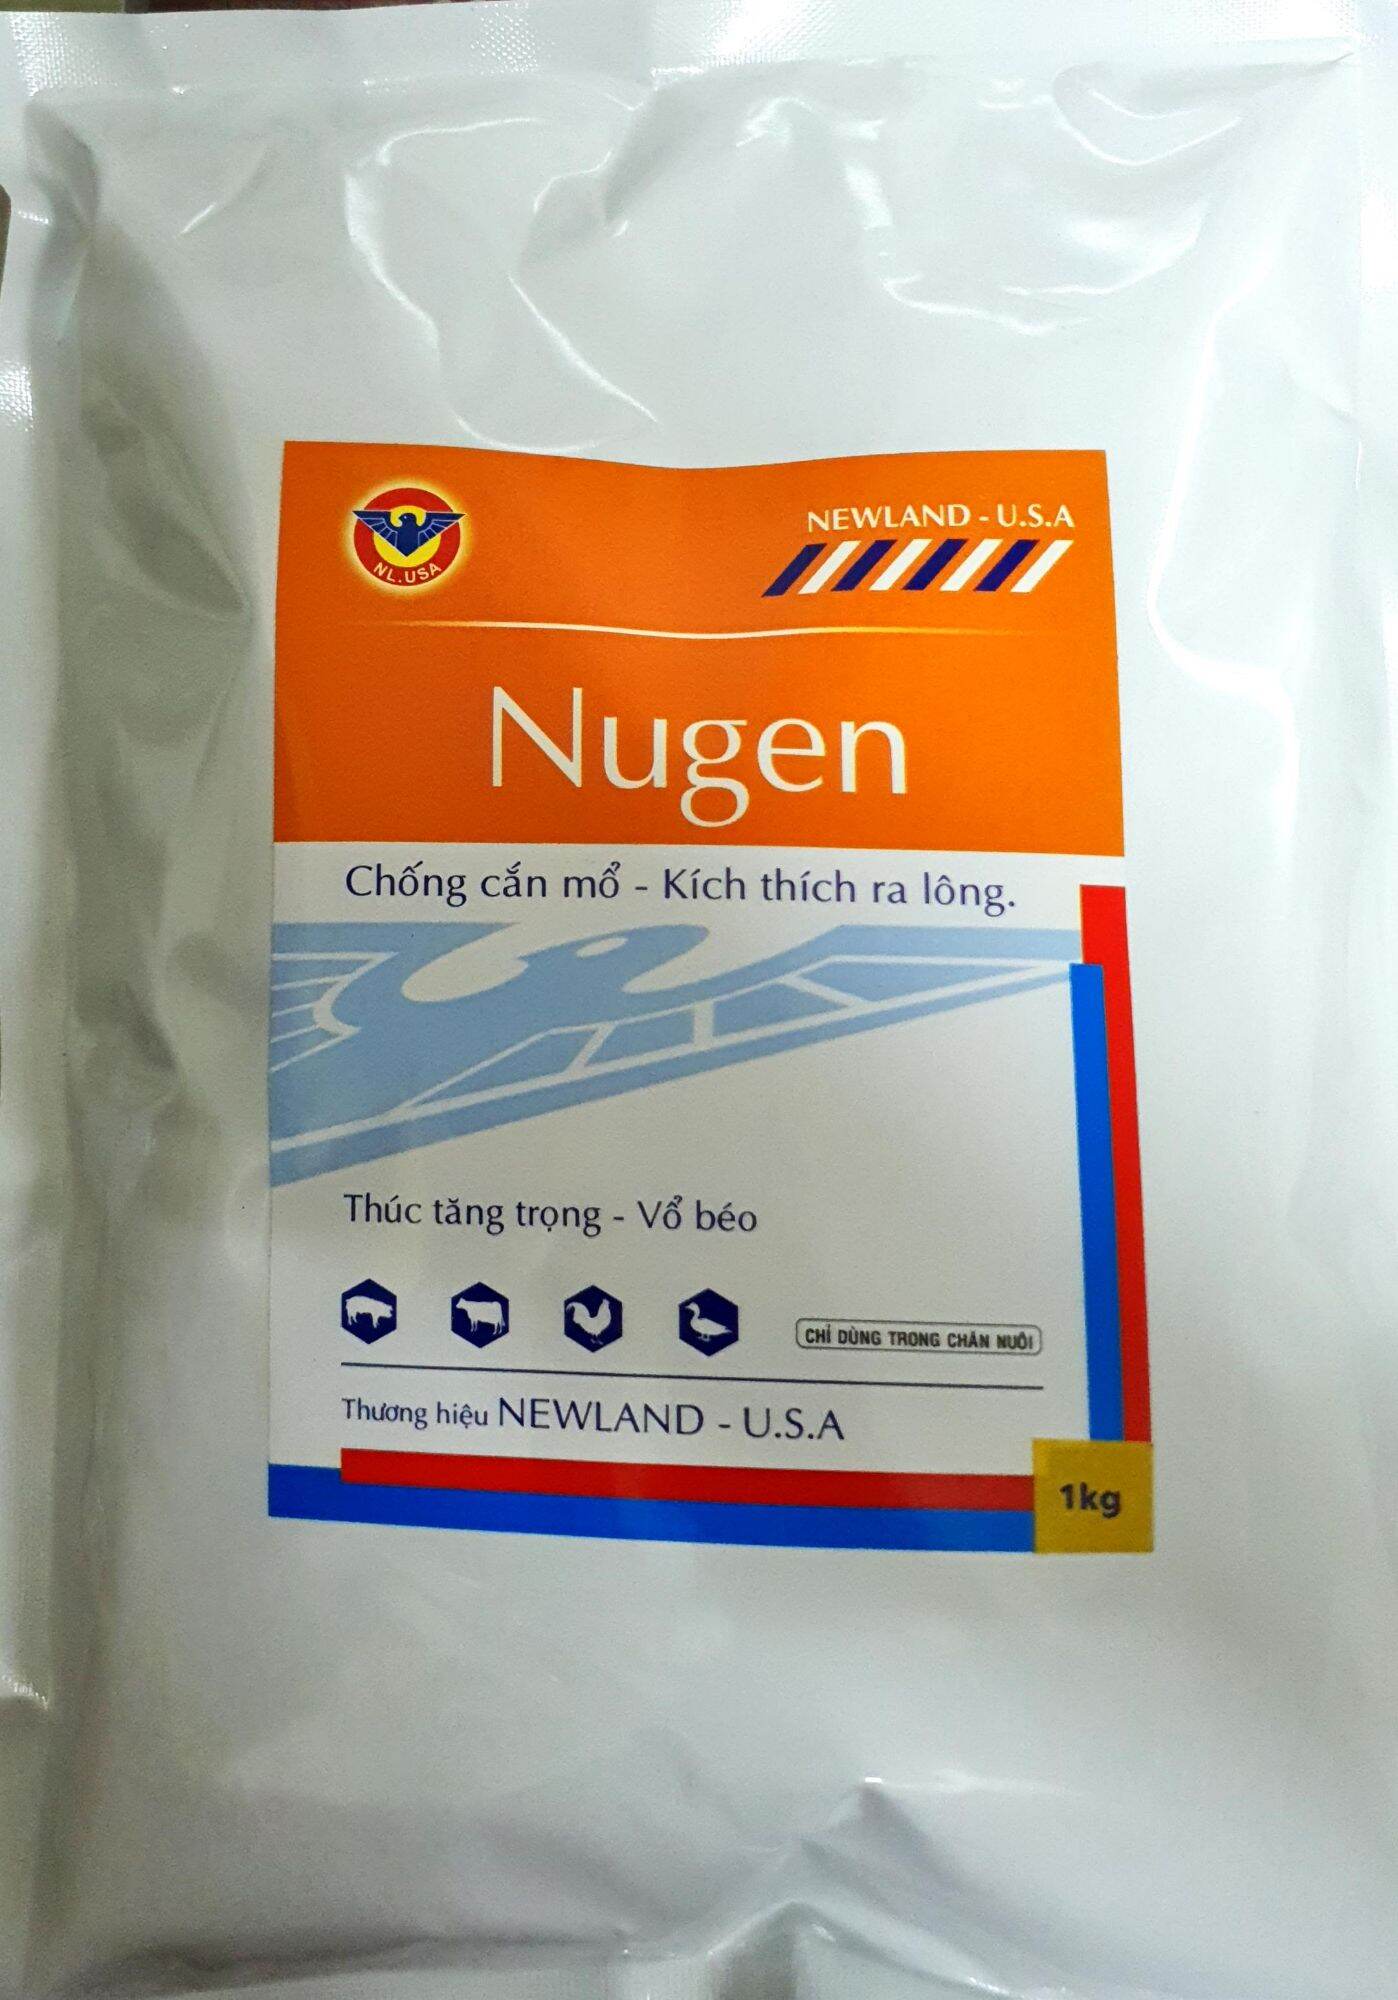 Nugen (1kg) - Chống cắn mổ, kích thích ra lông, chống còi cọc cho gà đá, vịt (Tan hoàn toàn trong nước)